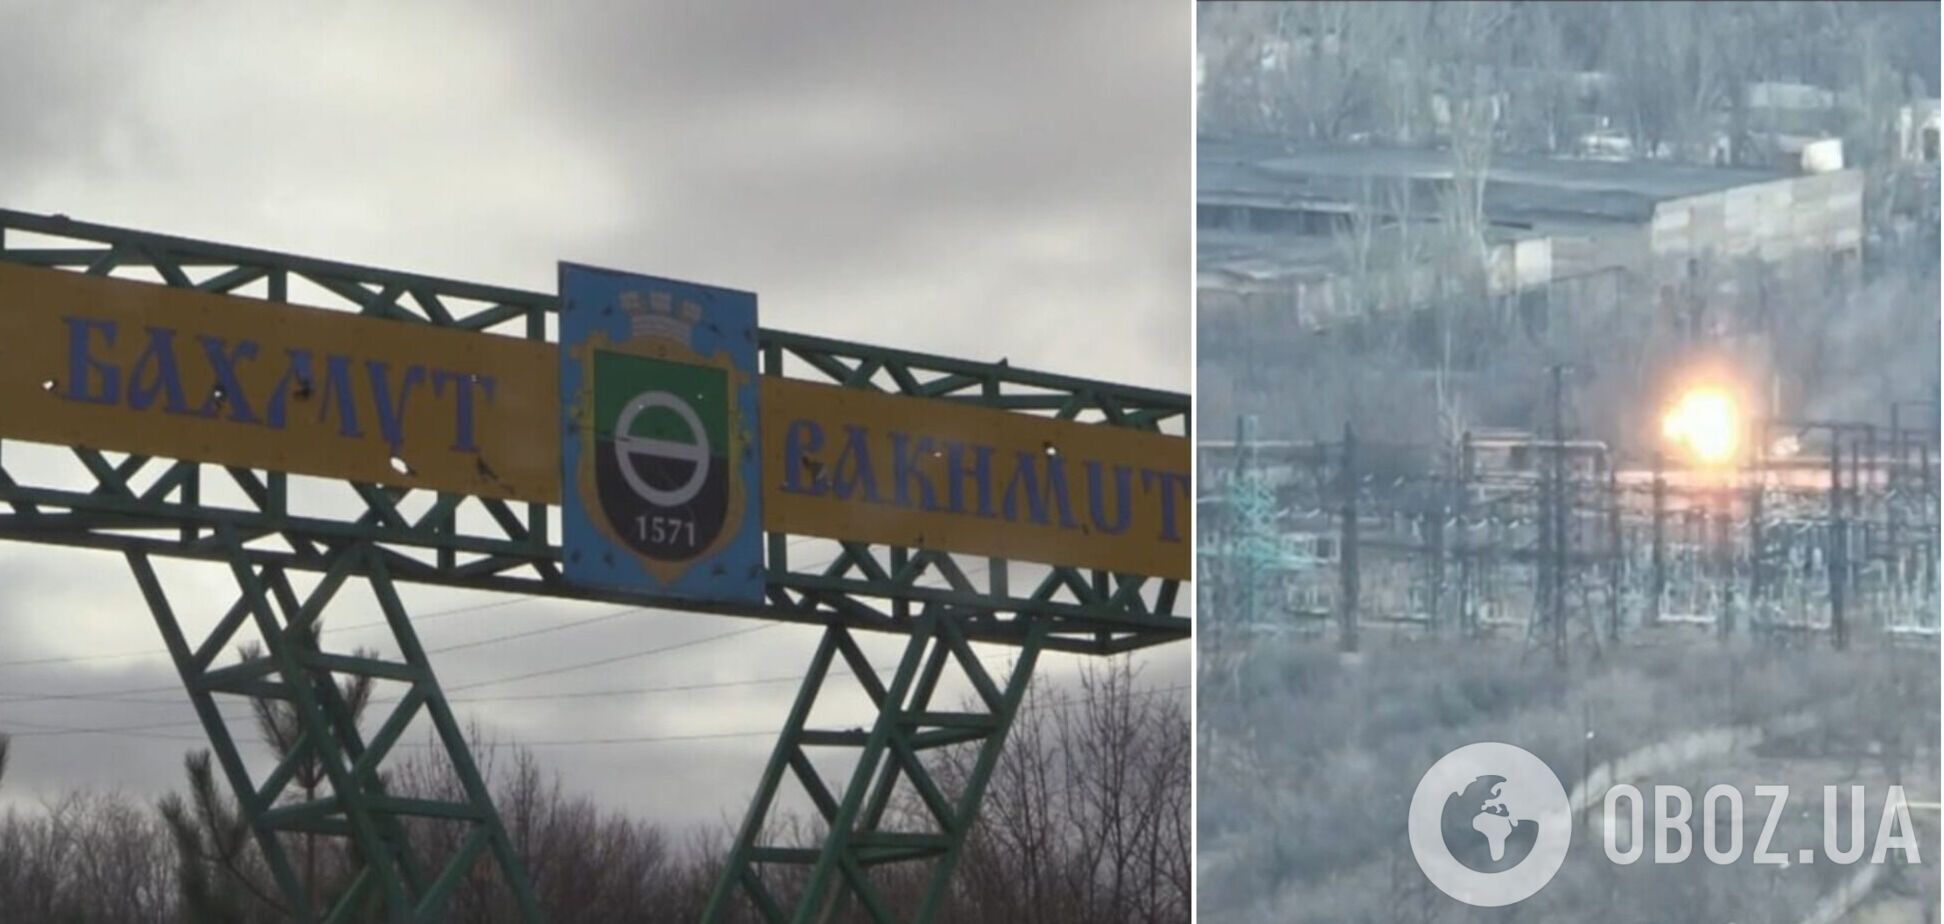 Пішли у прорив: українські прикордонники ліквідували групу 'вагнерівців' у промзоні Бахмута. Відео